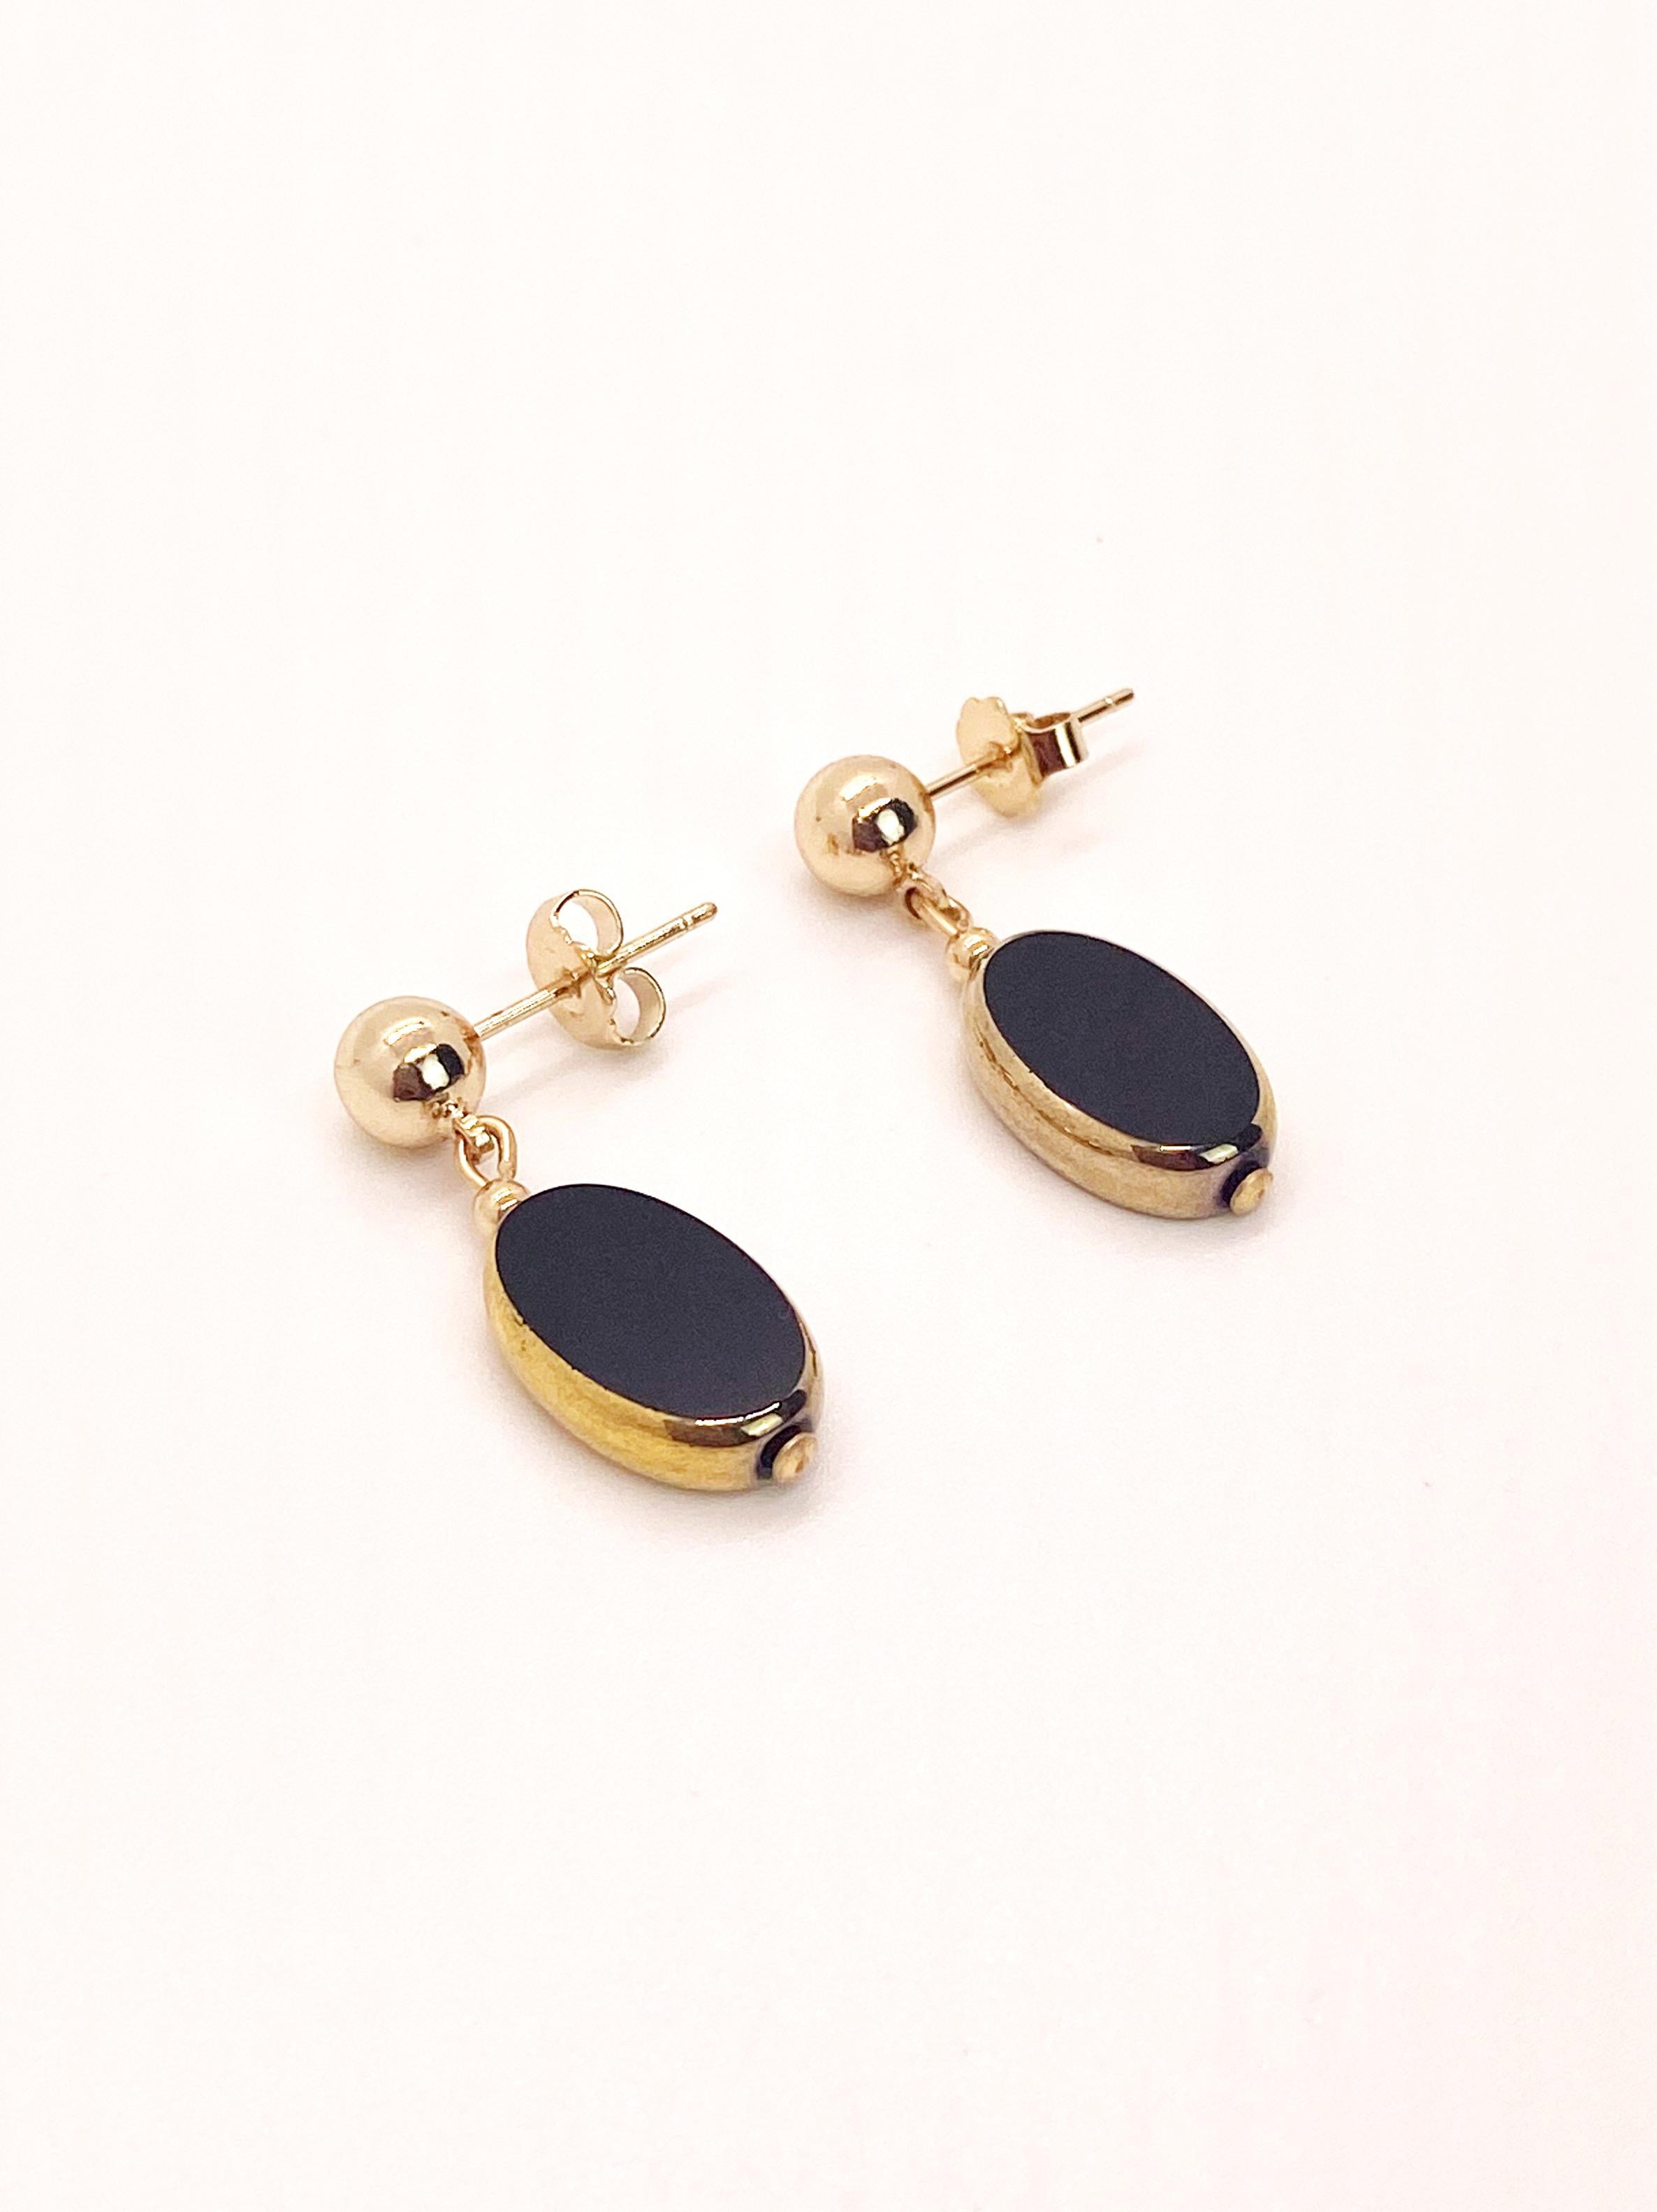 Perles de verre vintage allemandes ovales noires bordées d'or 24K pendantes sur une boule de 6mm remplie d'or 14K. 

Les perles de verre vintage allemandes sont considérées comme rares et de collection, vers les années 1920-1960.

*Nos bijoux ont